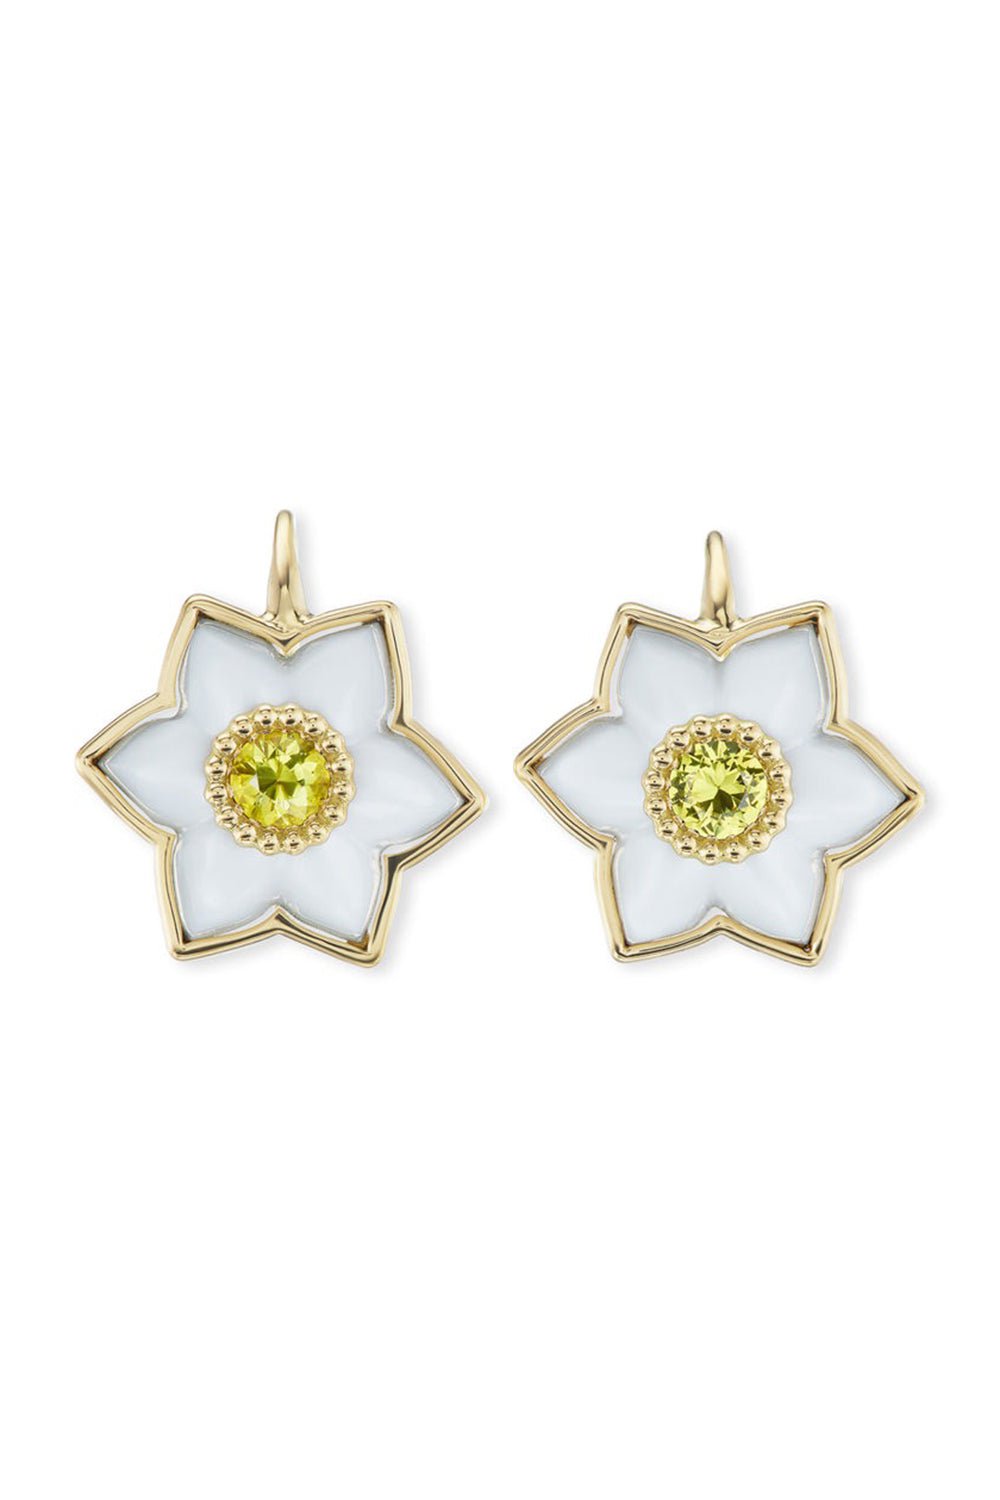 BRENT NEALE-Daffodil Drop Earrings-YELLOW GOLD